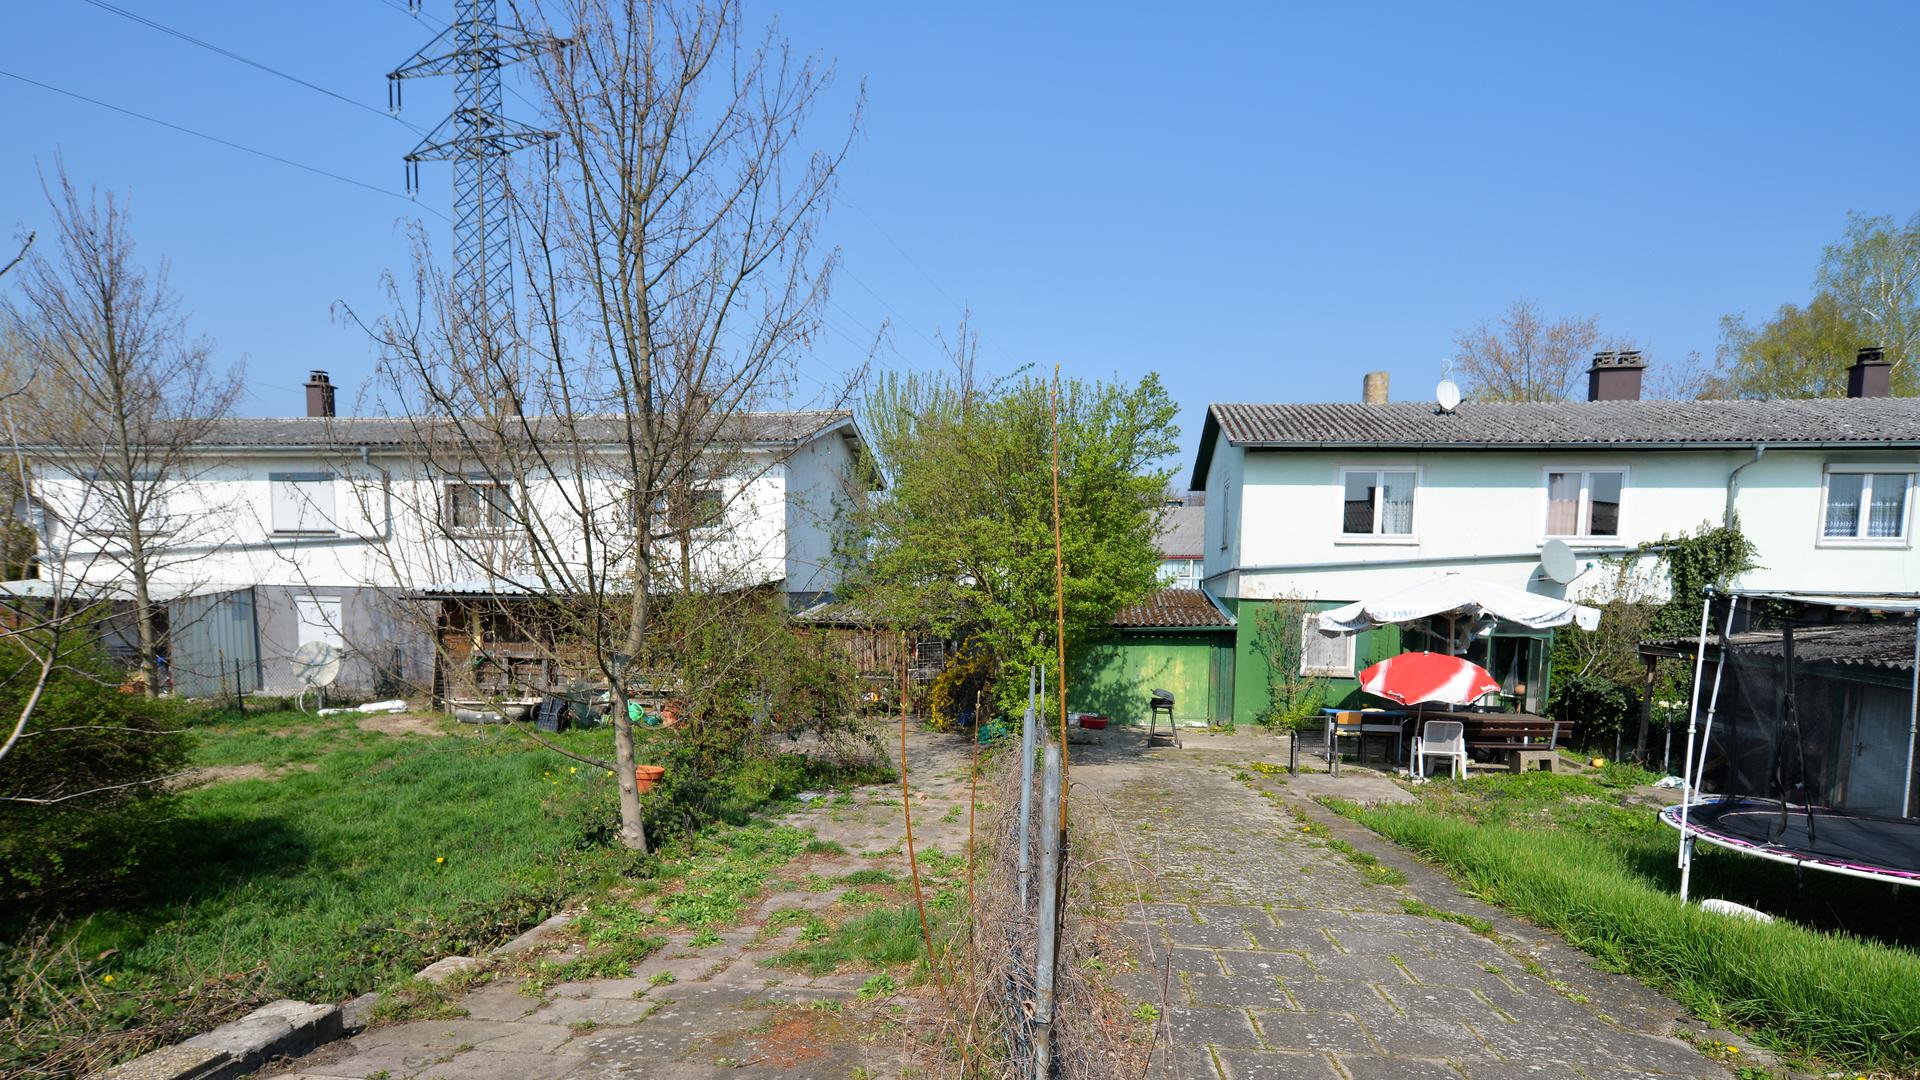 Die 14 Doppelhaushälften mit Sozialwohnungen in der Dr.-Georg-Schaeffler-Straße sollen nach Vorstellungen
 der Stadt wegen ihrer Insellage im Industriegebiet abgerissen werden. 